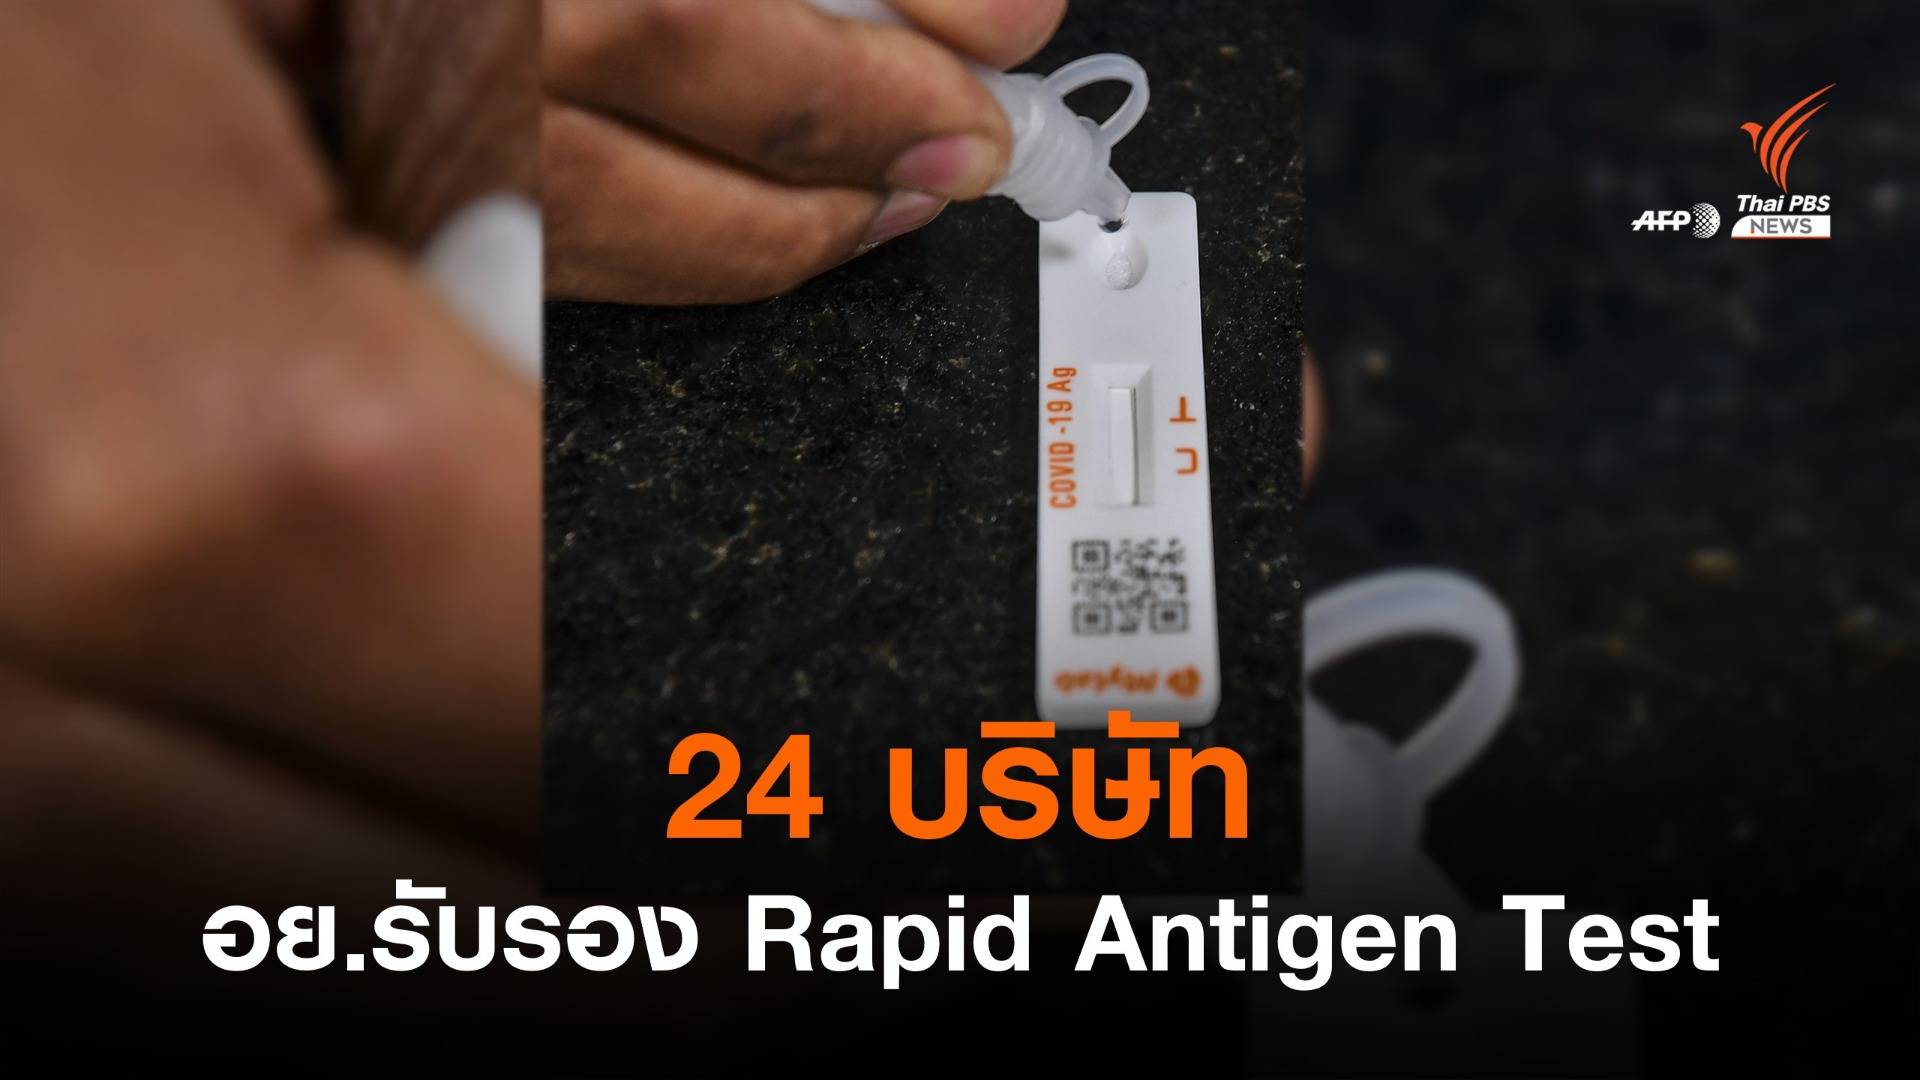 อย.รับรอง 24 บริษัท นำเข้า "Rapid Antigen Test" ชุดตรวจเร่งด่วน